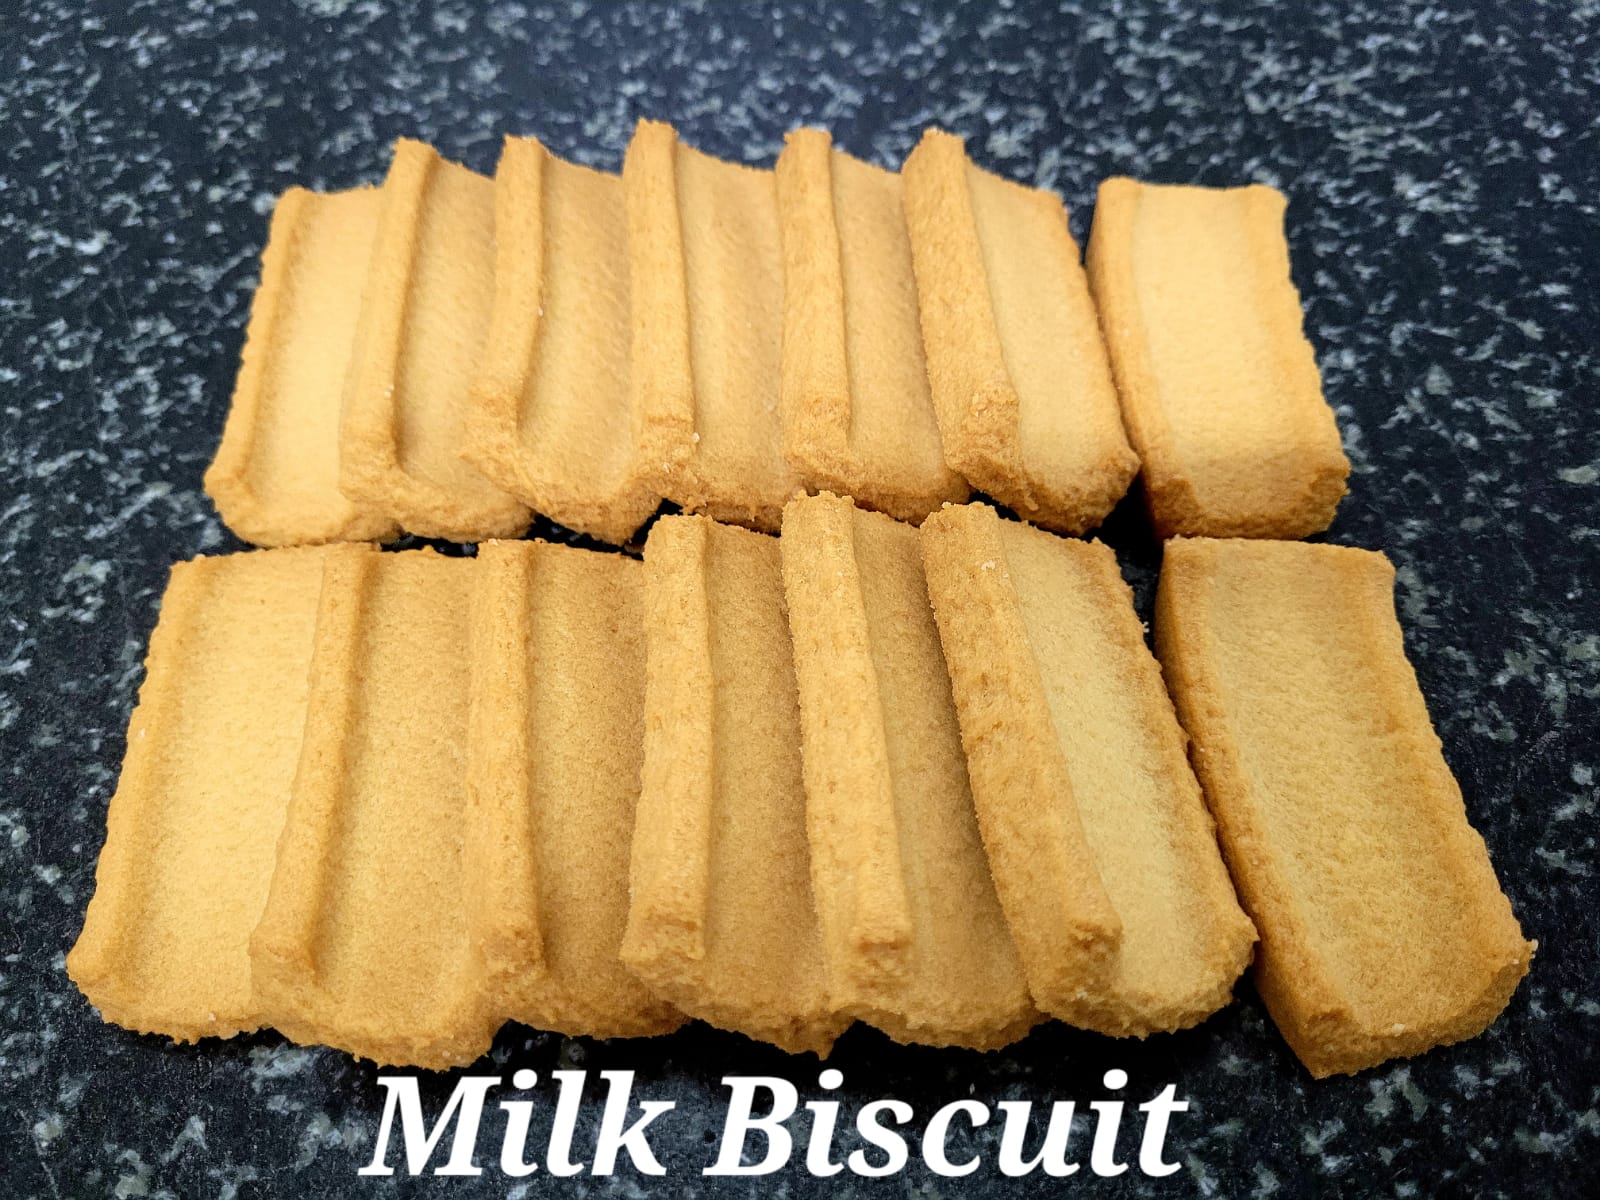 Milk biscuits